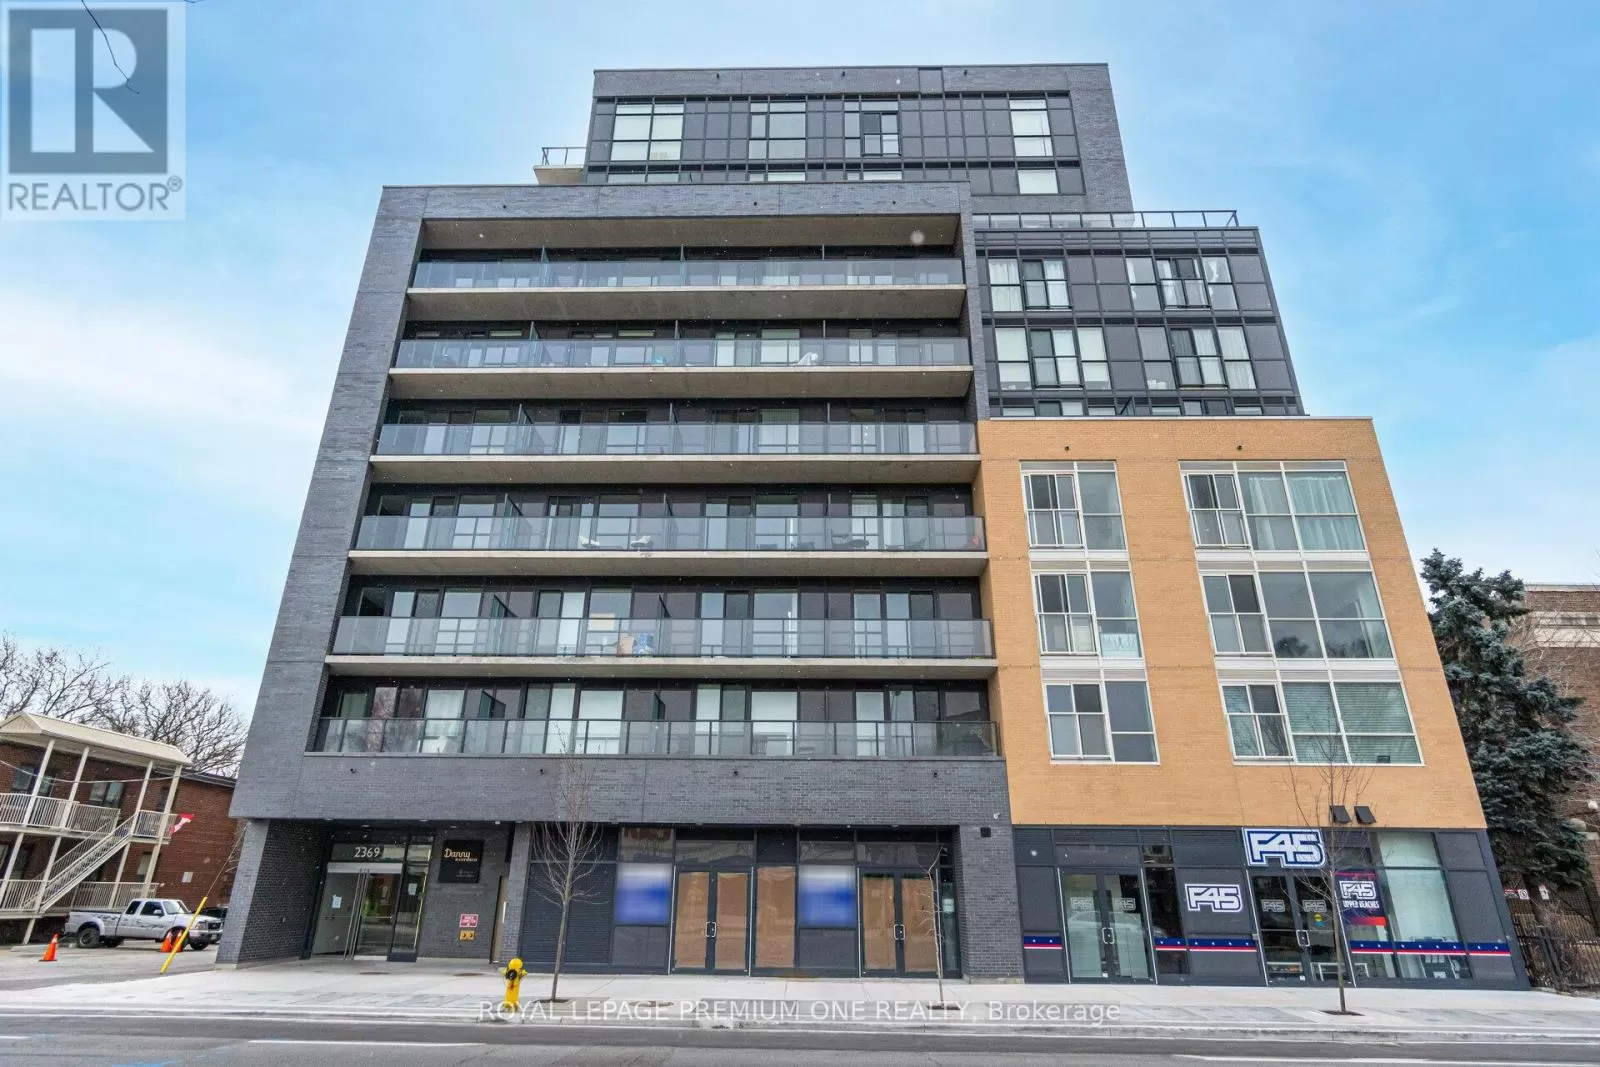 Apartment for rent: 313 - 2369 Danforth Avenue, Toronto, Ontario M4C 1K8